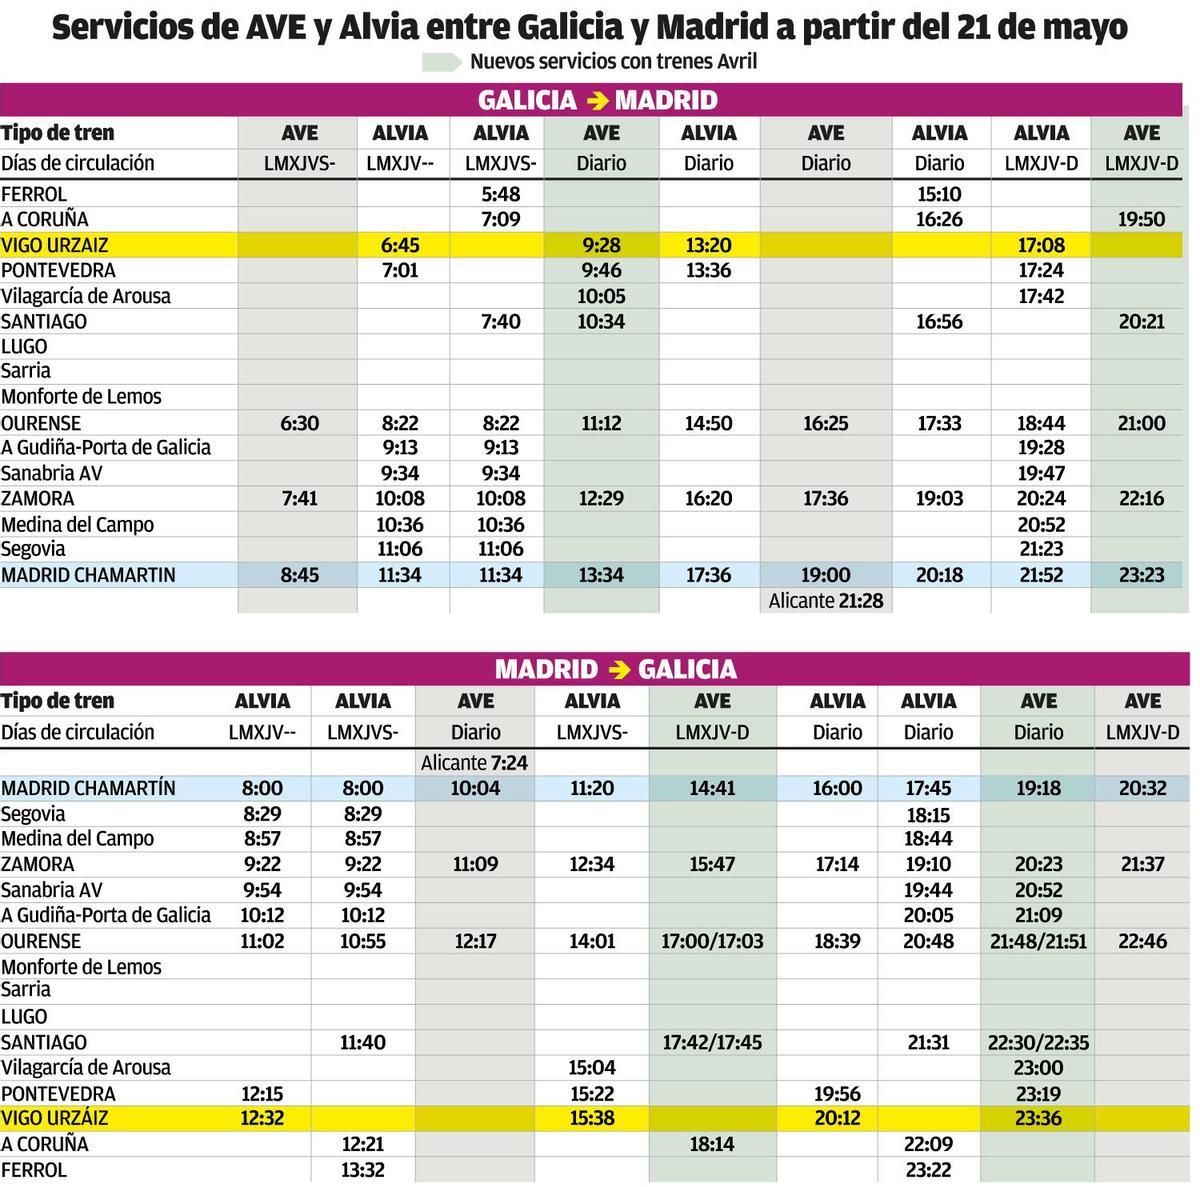 Servicios de AVE y Alvia entre Galicia y Madrid a partir del 21 de mayo.